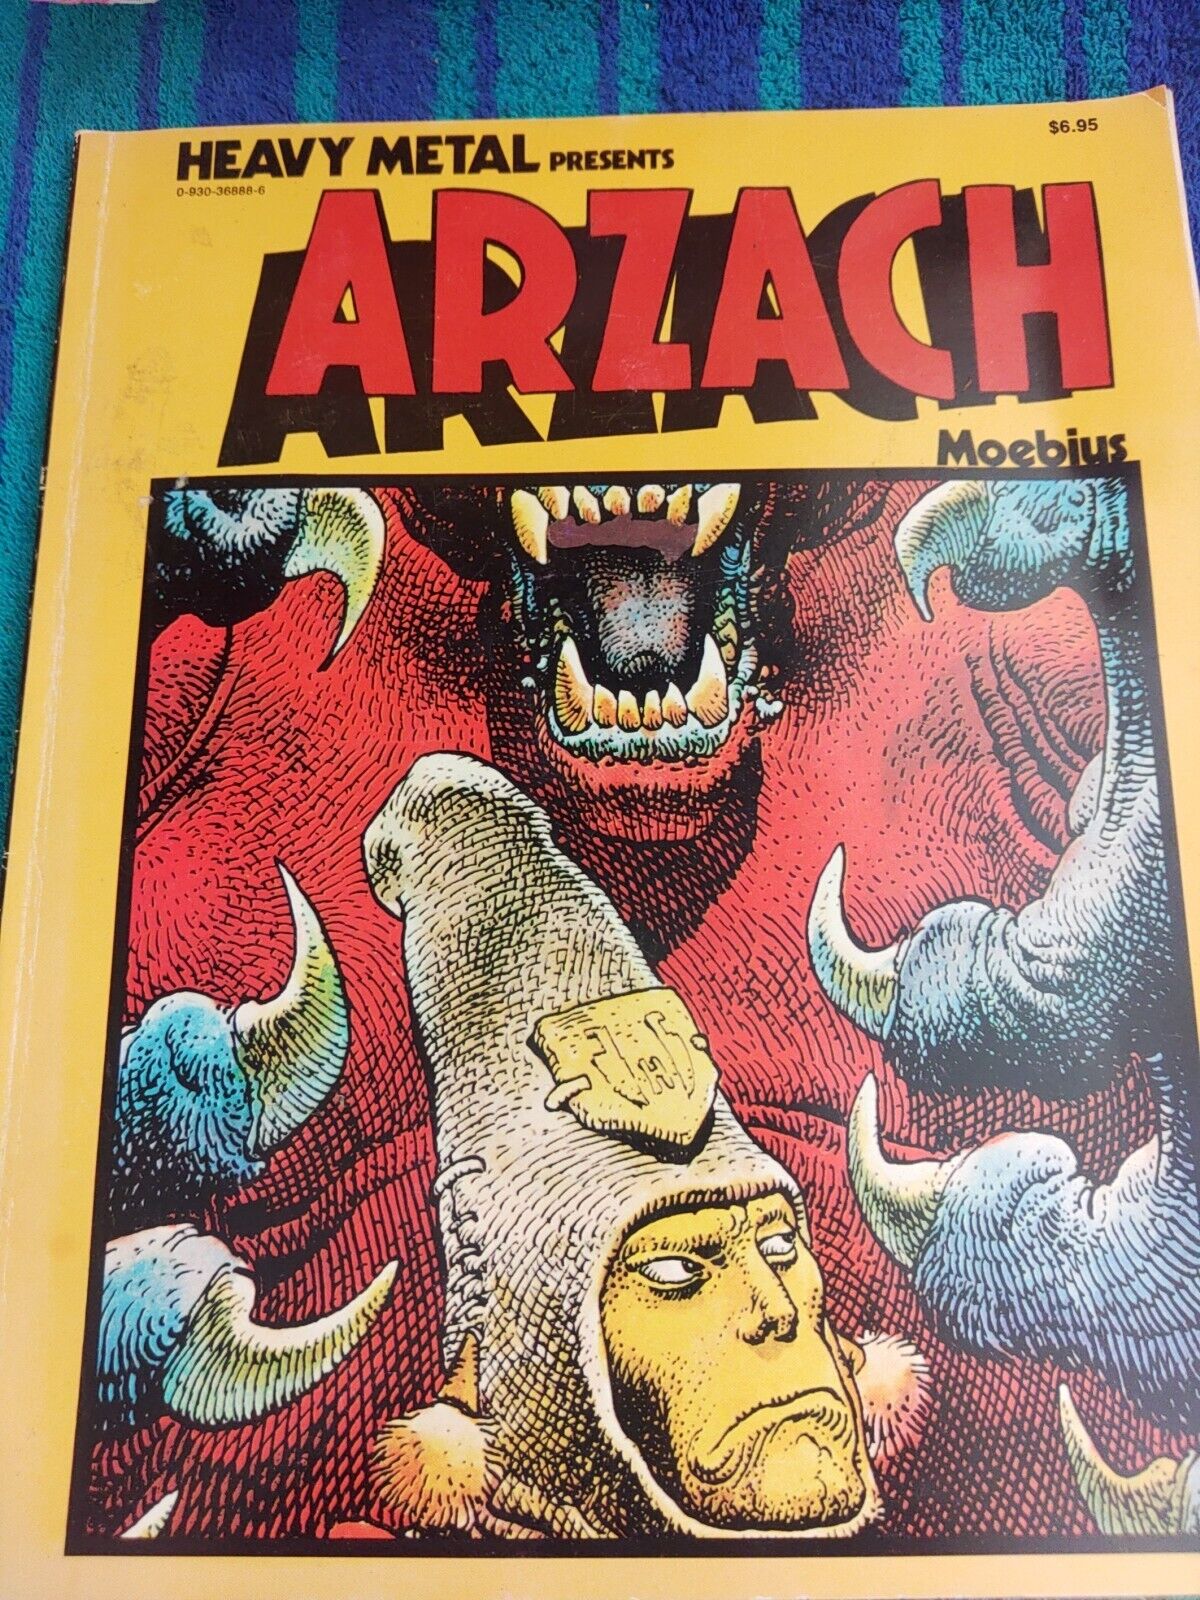 Heavy Metal Presents Arzach  By Moebius 1977 Book